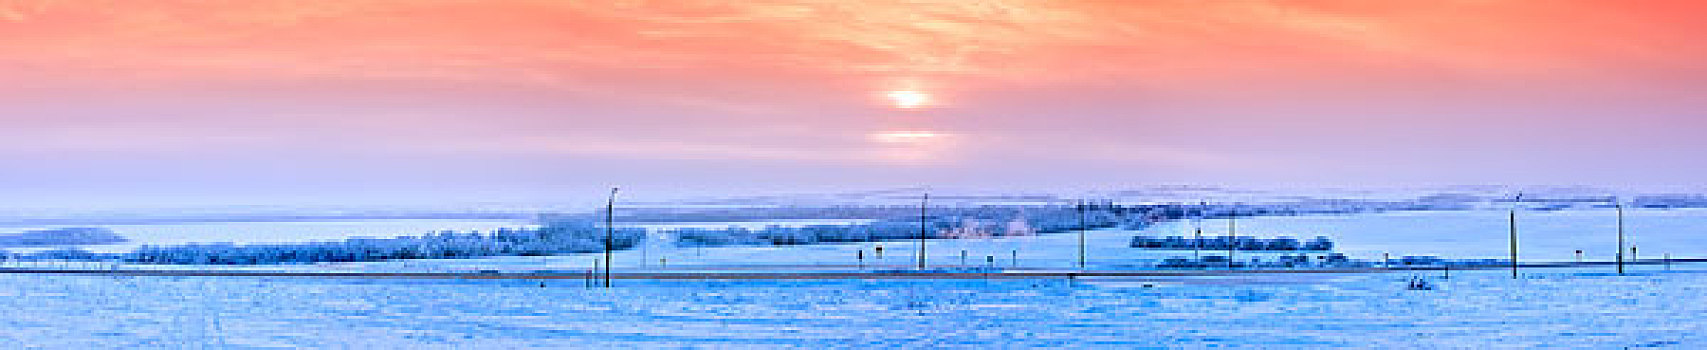 冬天,日落,草原,艾伯塔省,加拿大